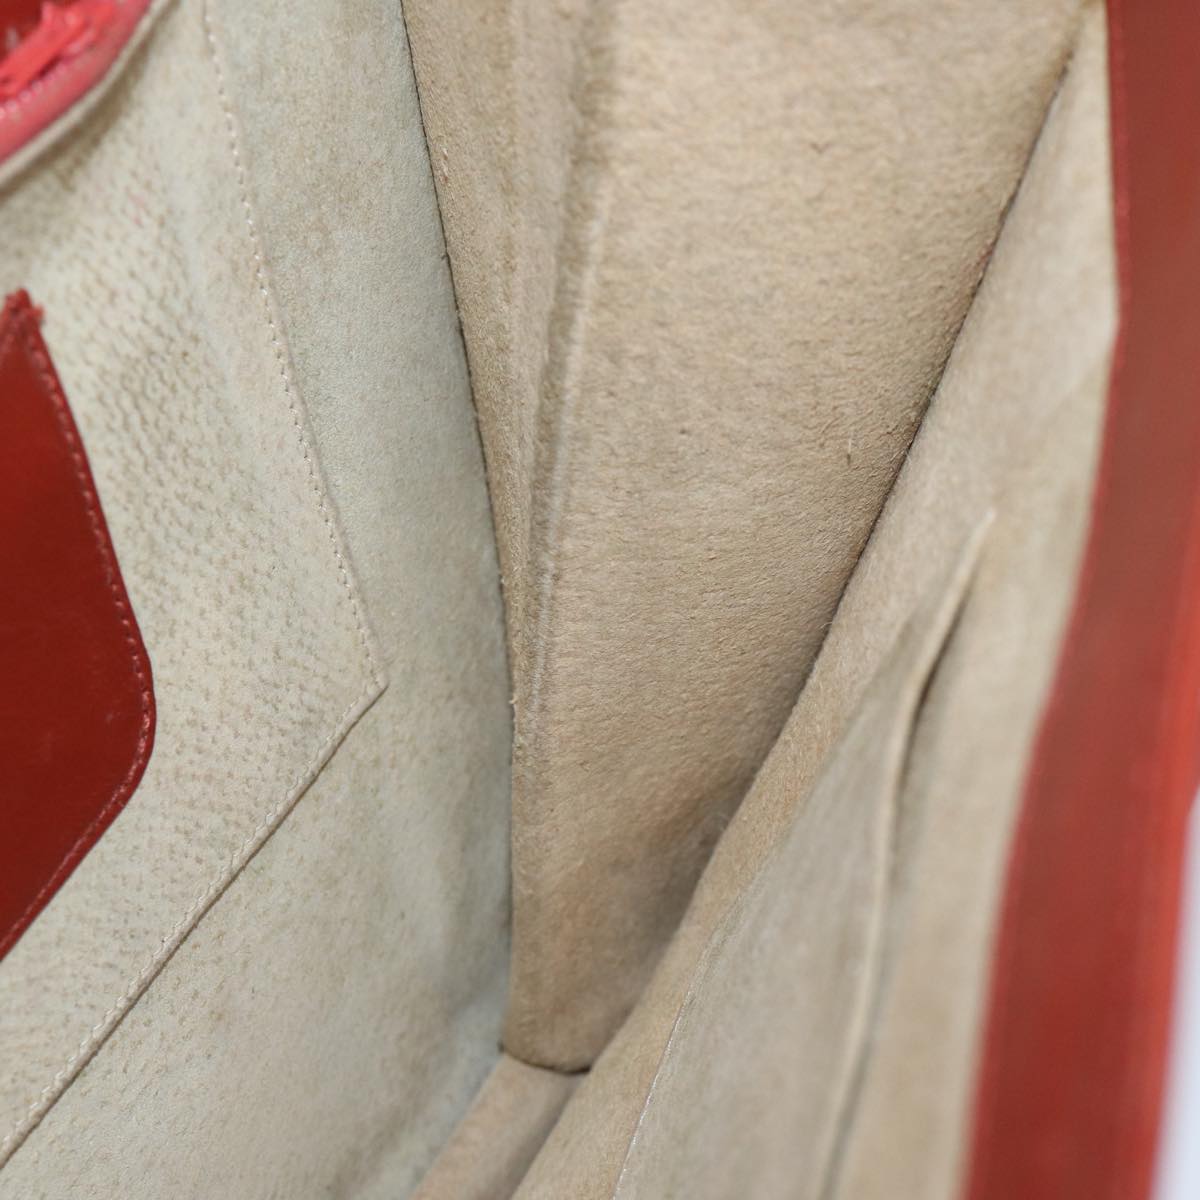 SAINT LAURENT Shoulder Bag Leather Brown Auth bs13211